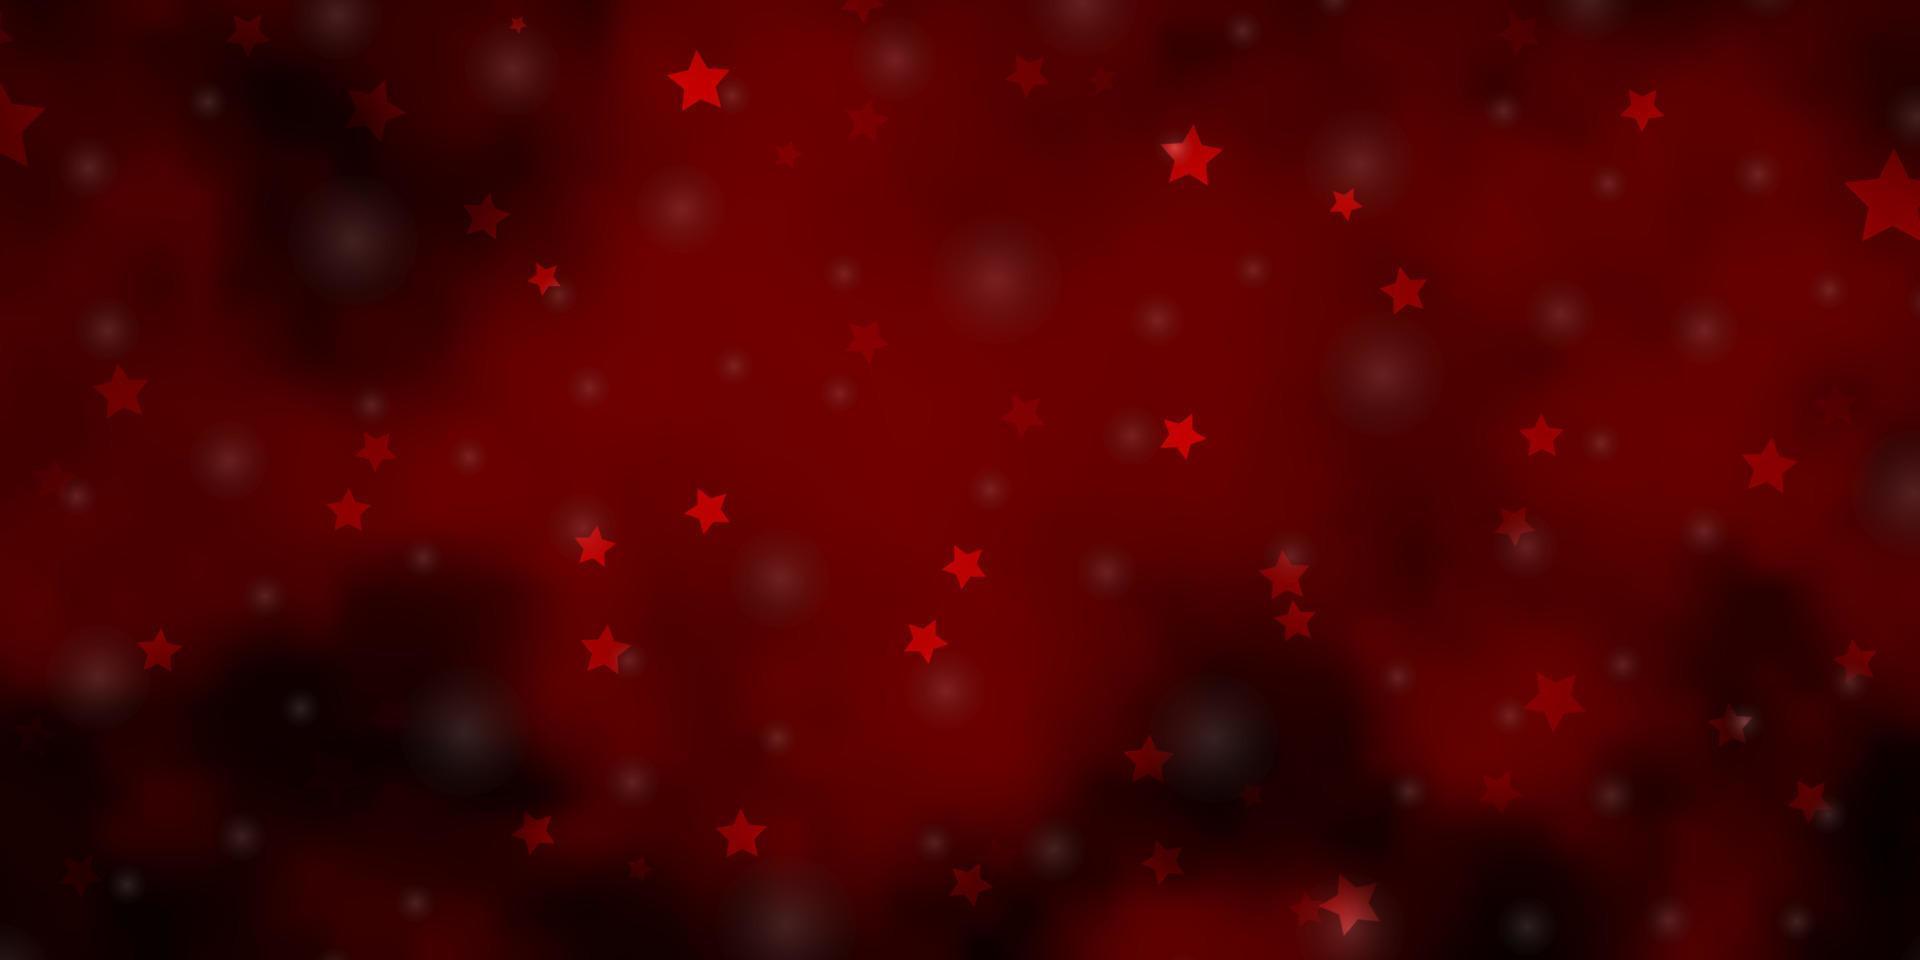 Fondo de vector rojo oscuro con estrellas pequeñas y grandes.